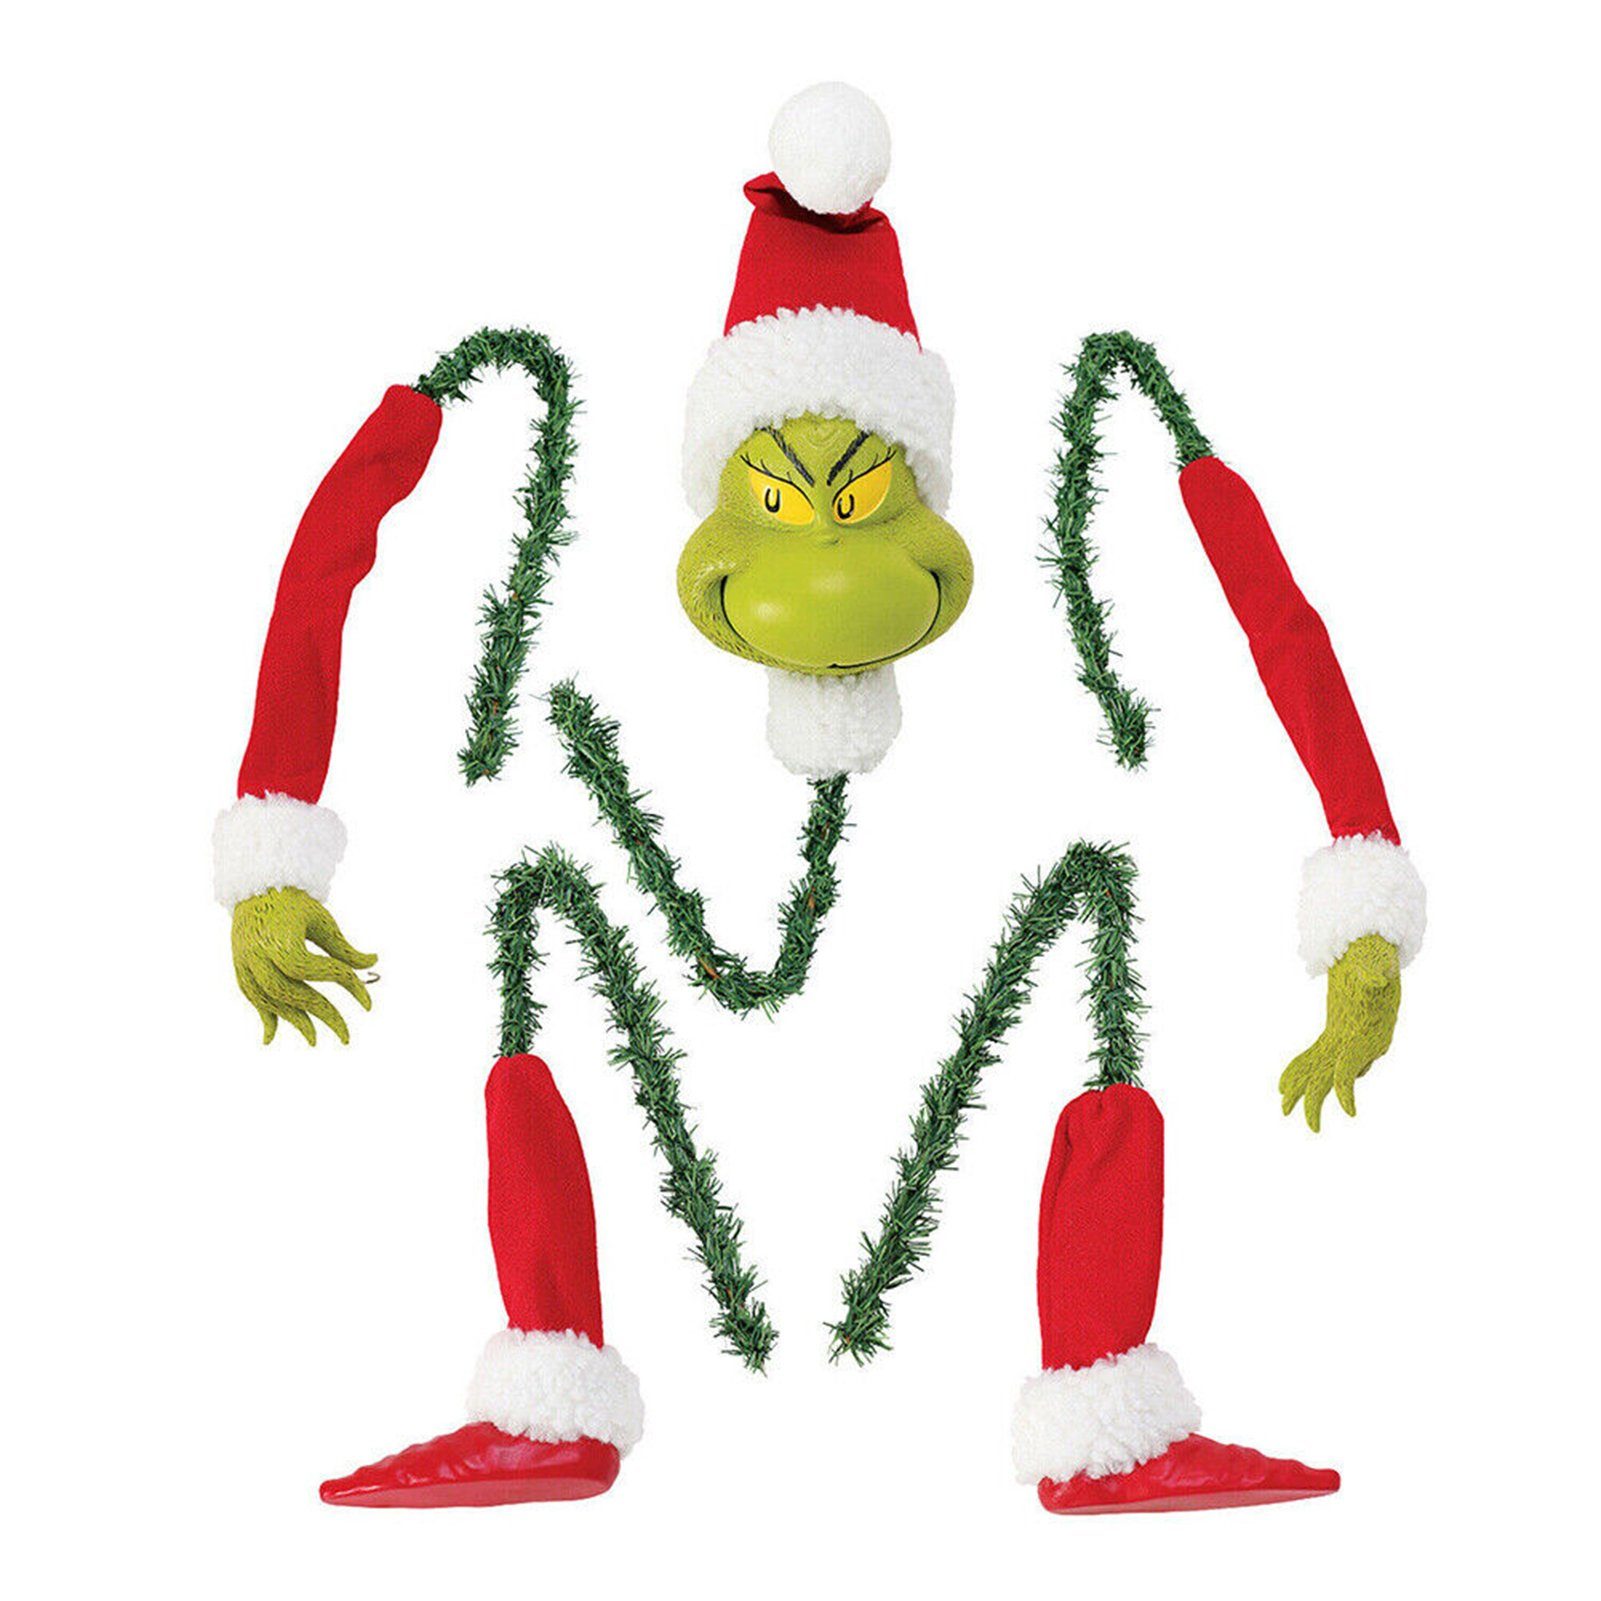 Blusmart Christbaumschmuck Lustige Grüne Puppe, Dekorative Figuren Für Den Weihnachtsbaum